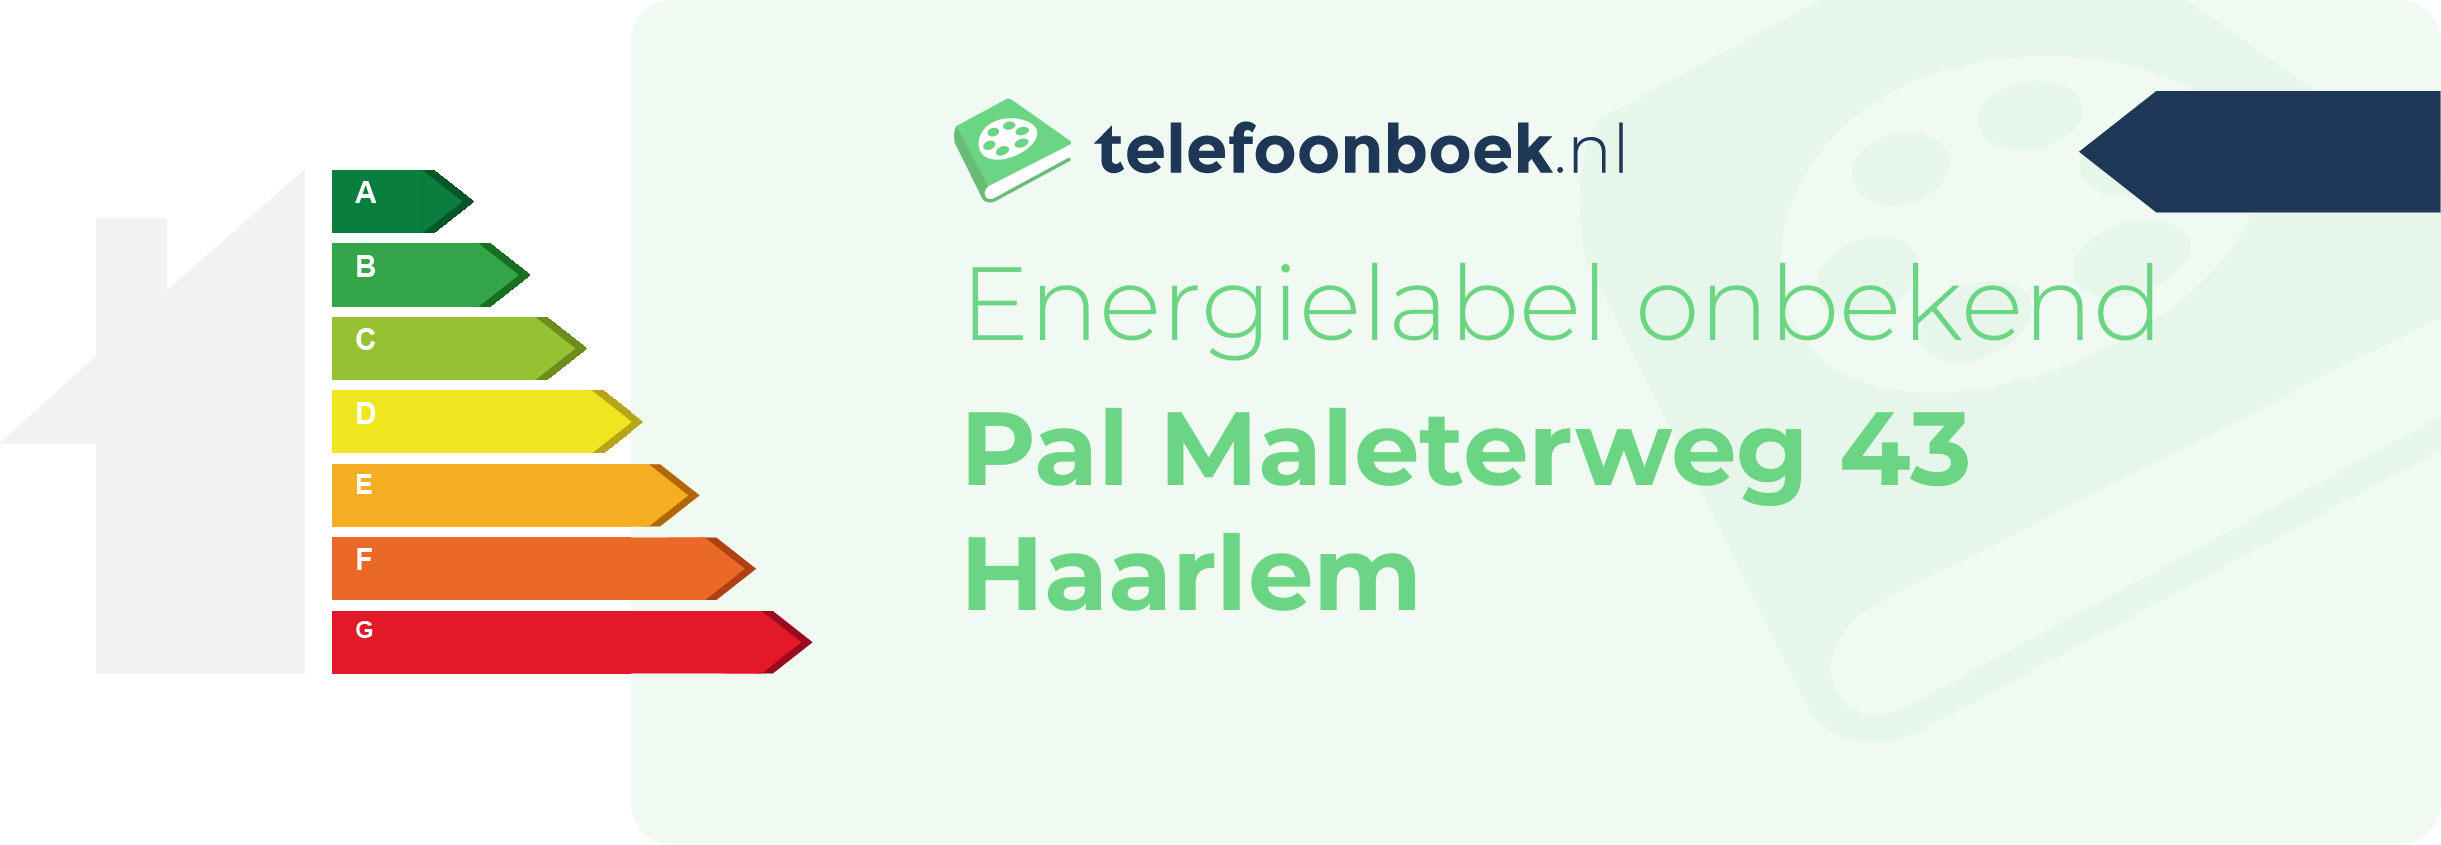 Energielabel Pal Maleterweg 43 Haarlem